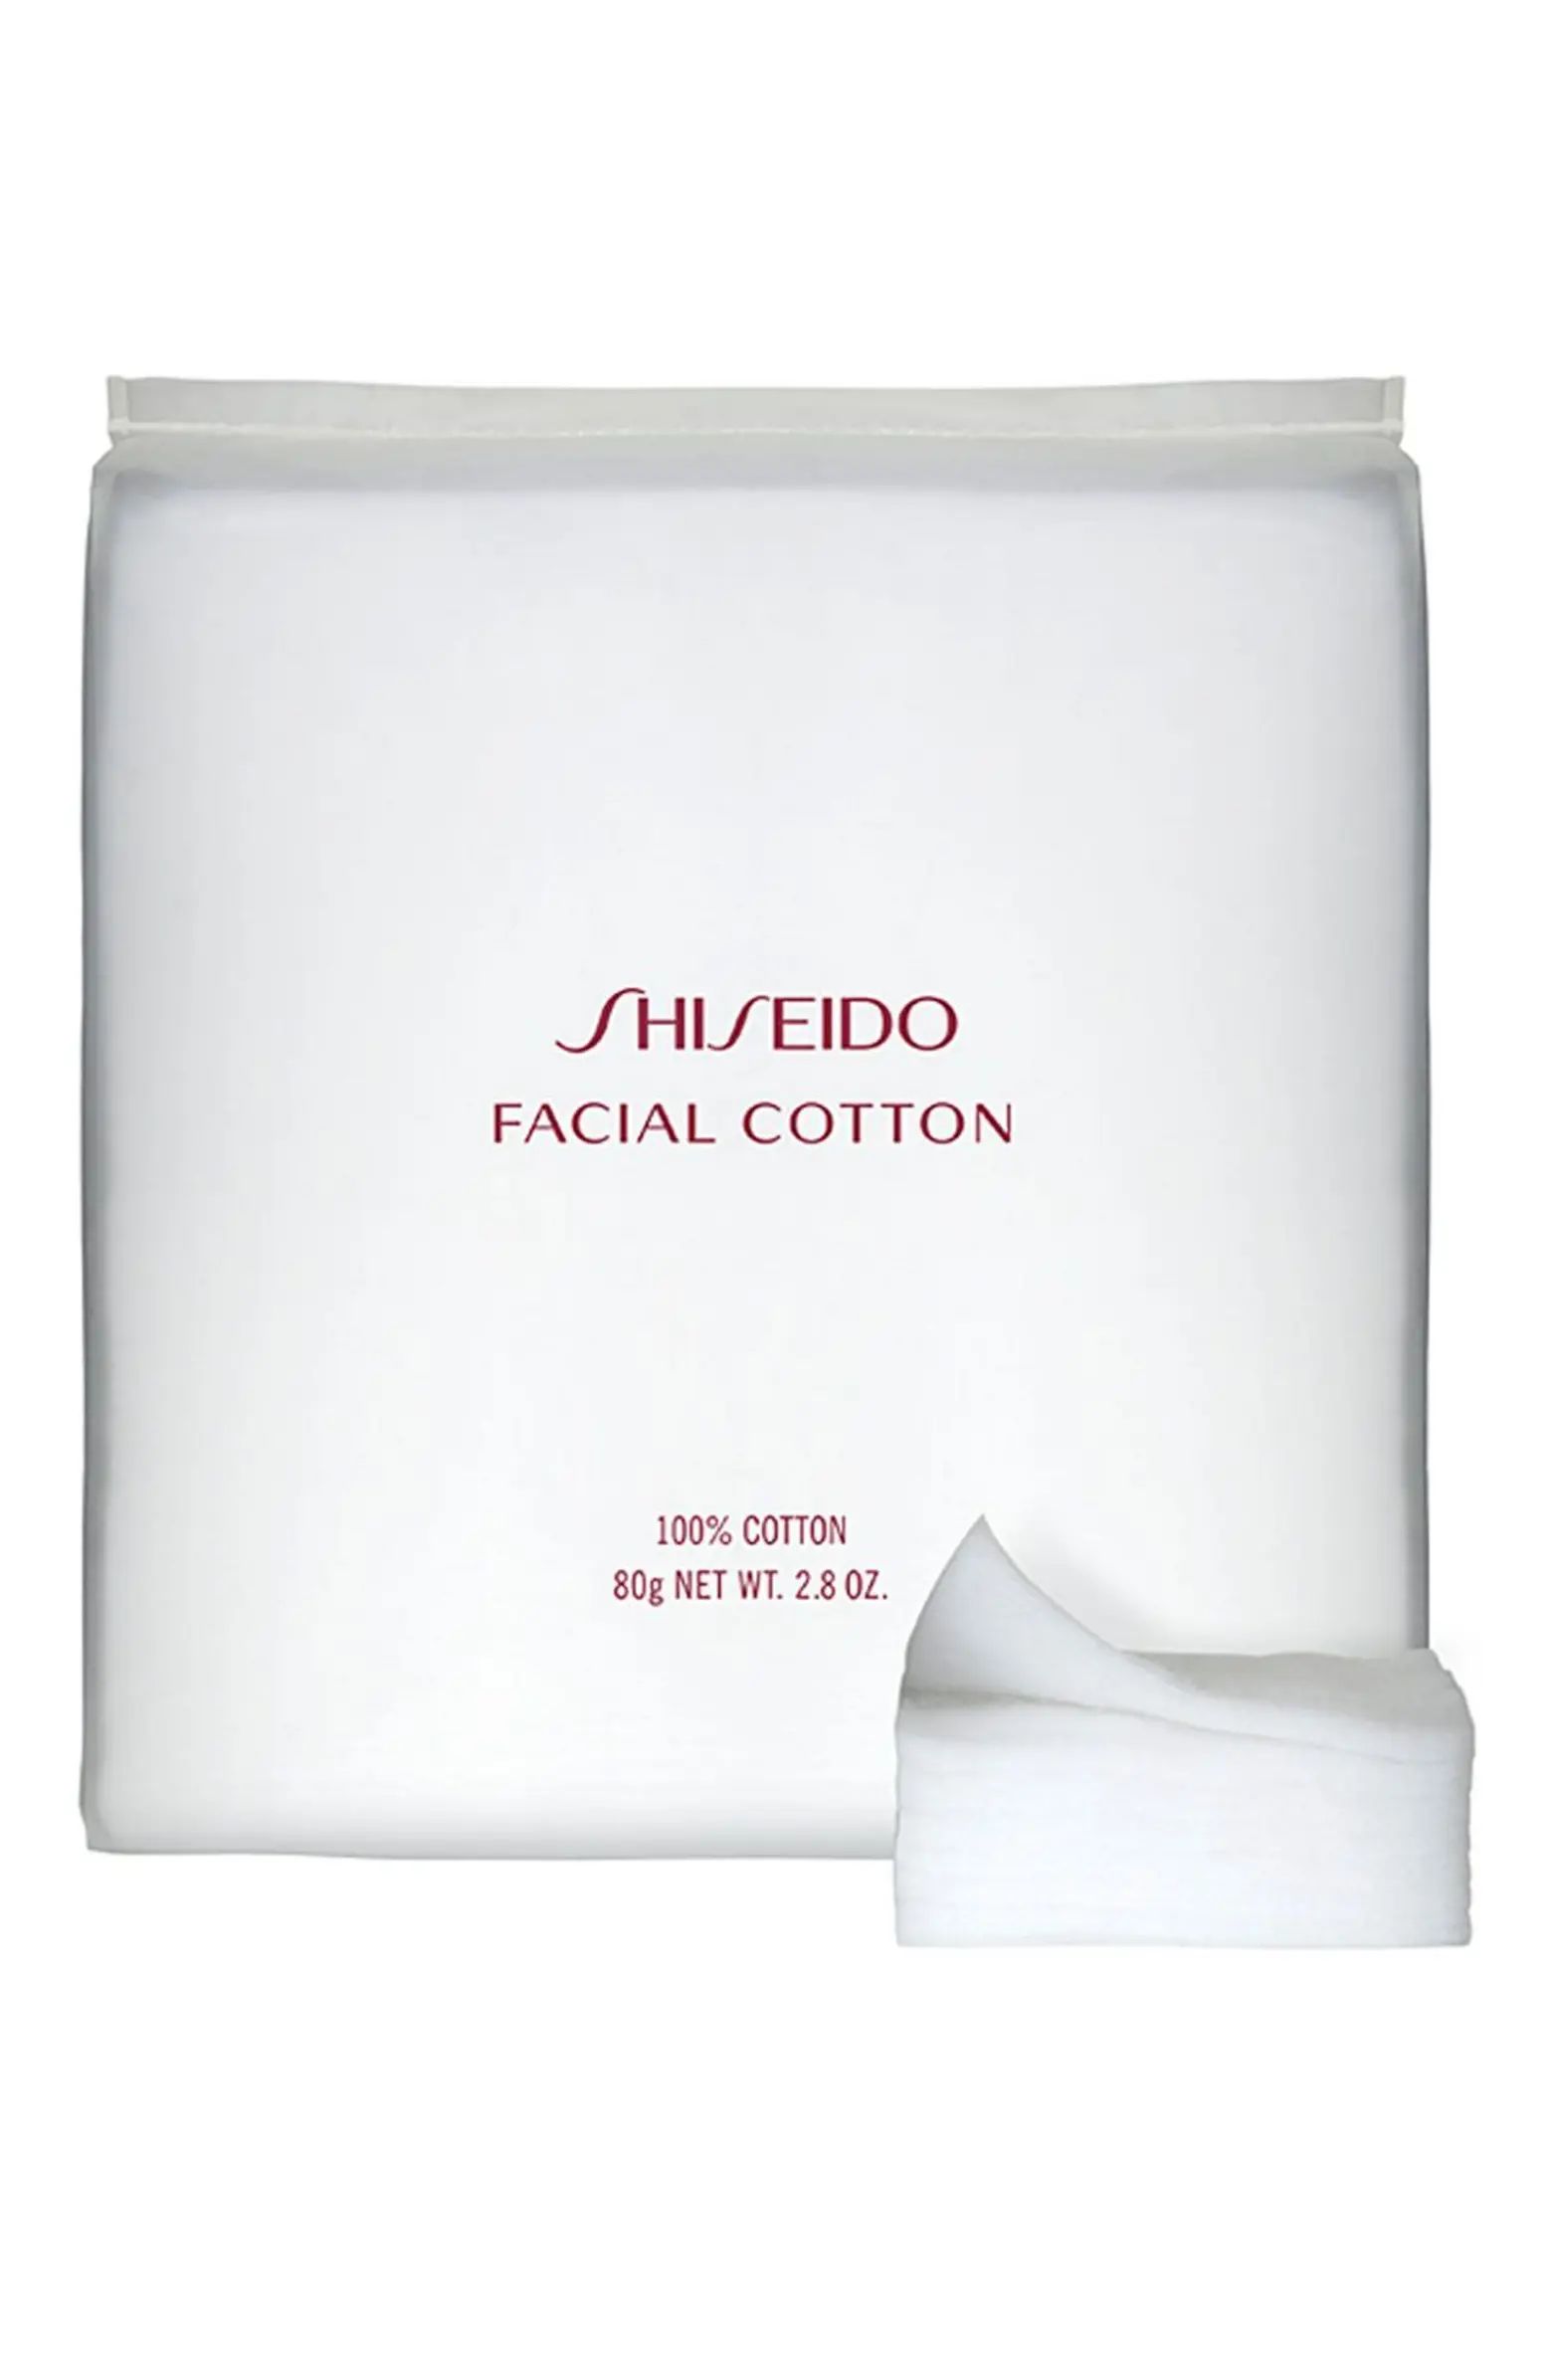 Shiseido Facial Cotton | Nordstrom | Nordstrom